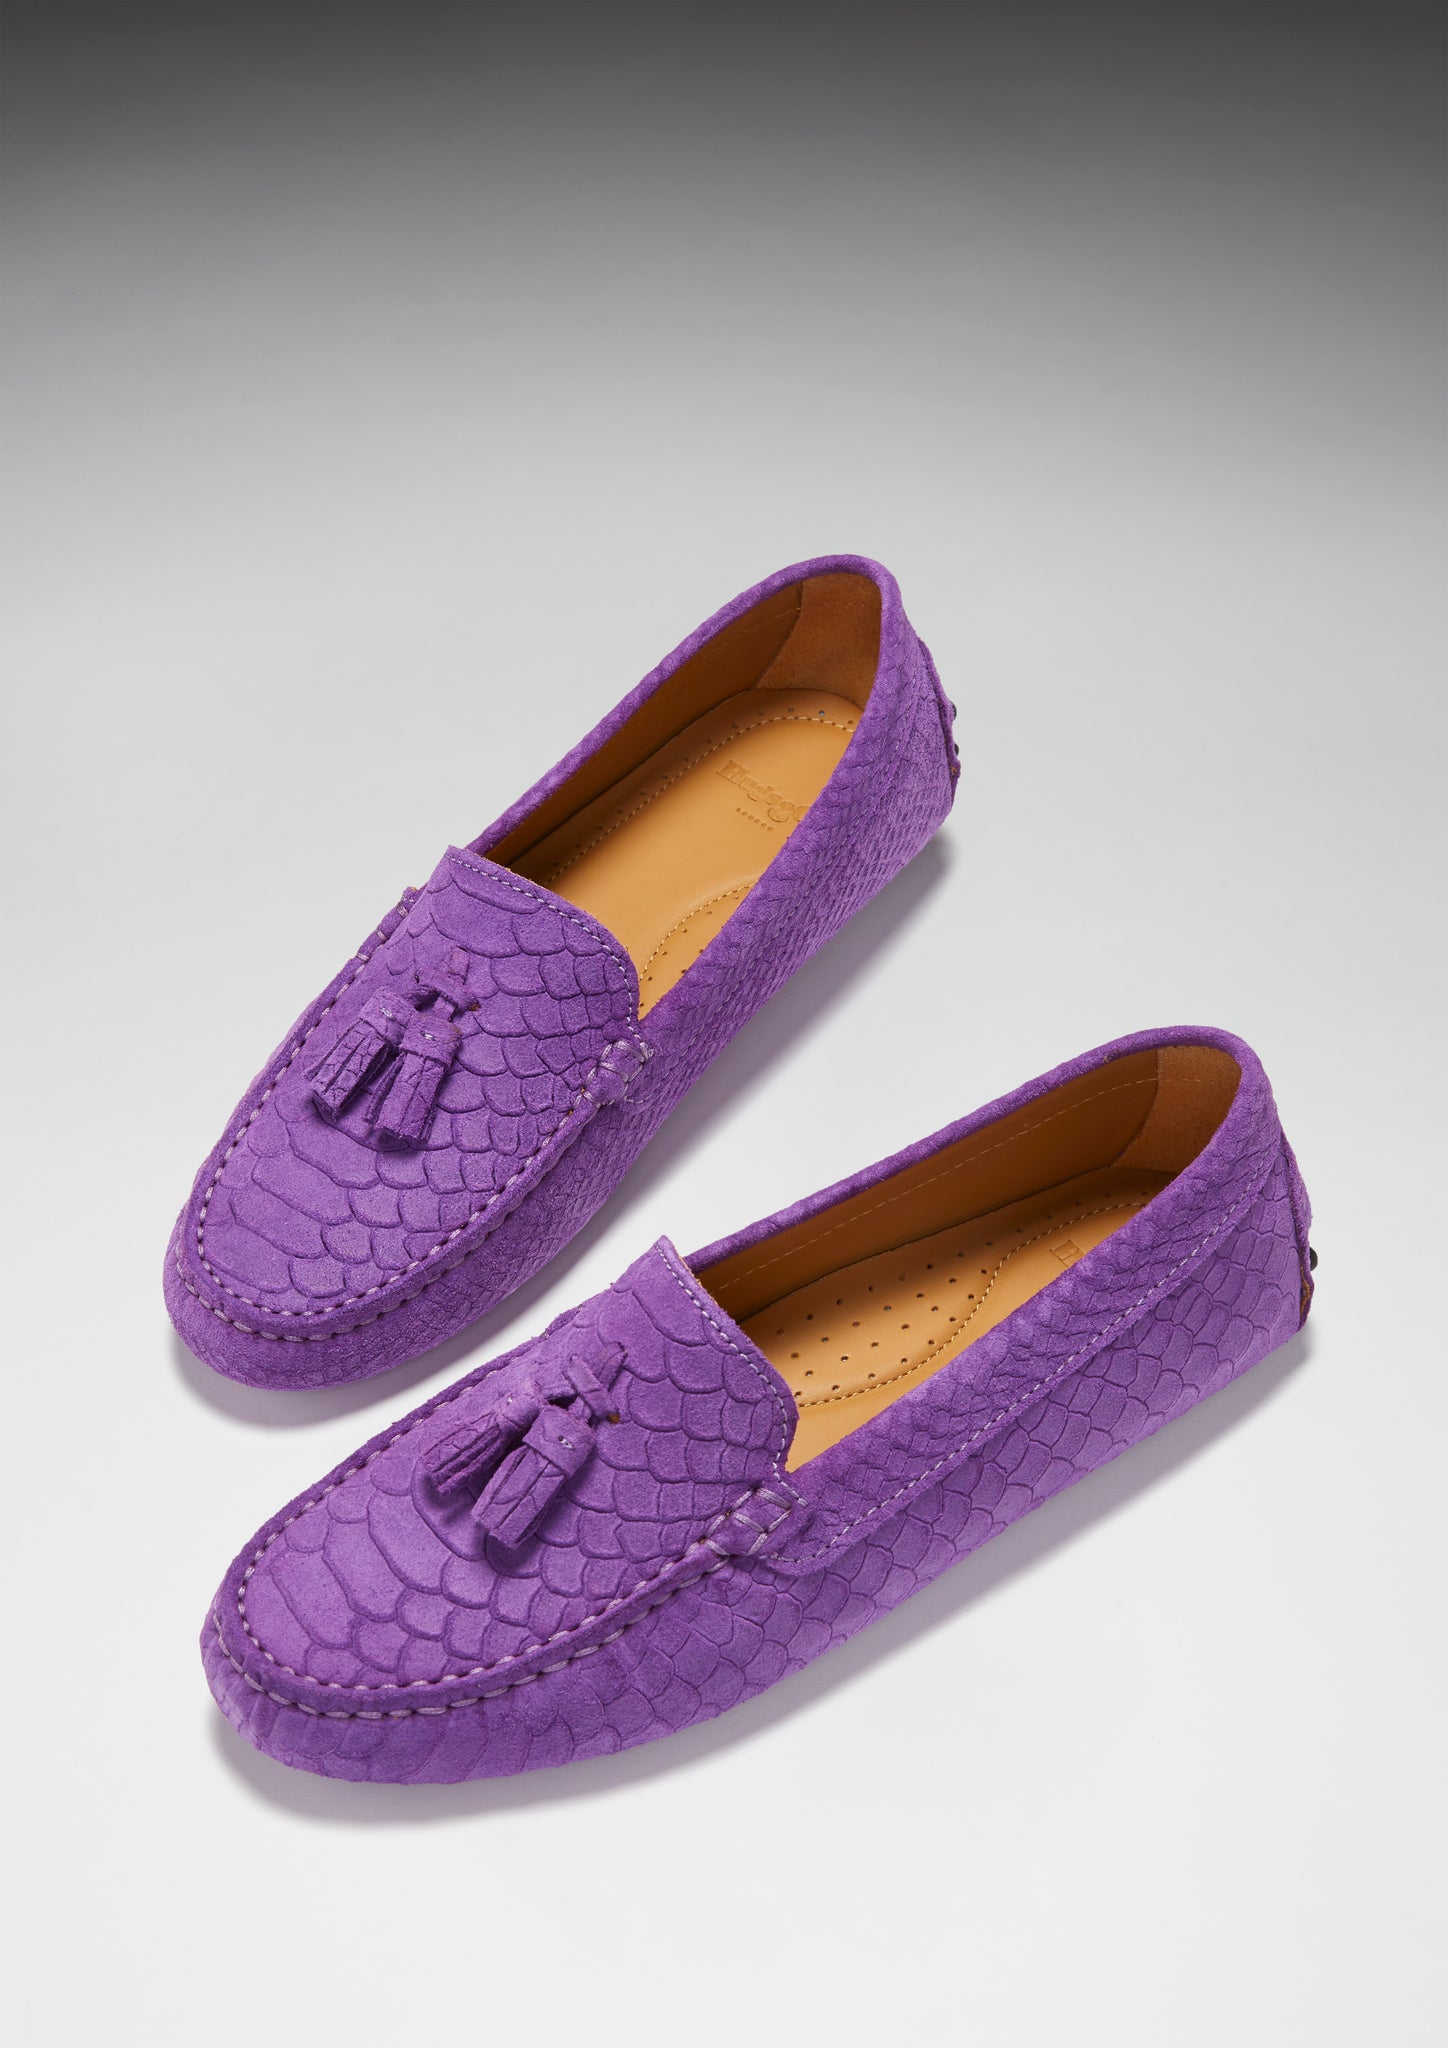 Hugs & Co. purple shoes